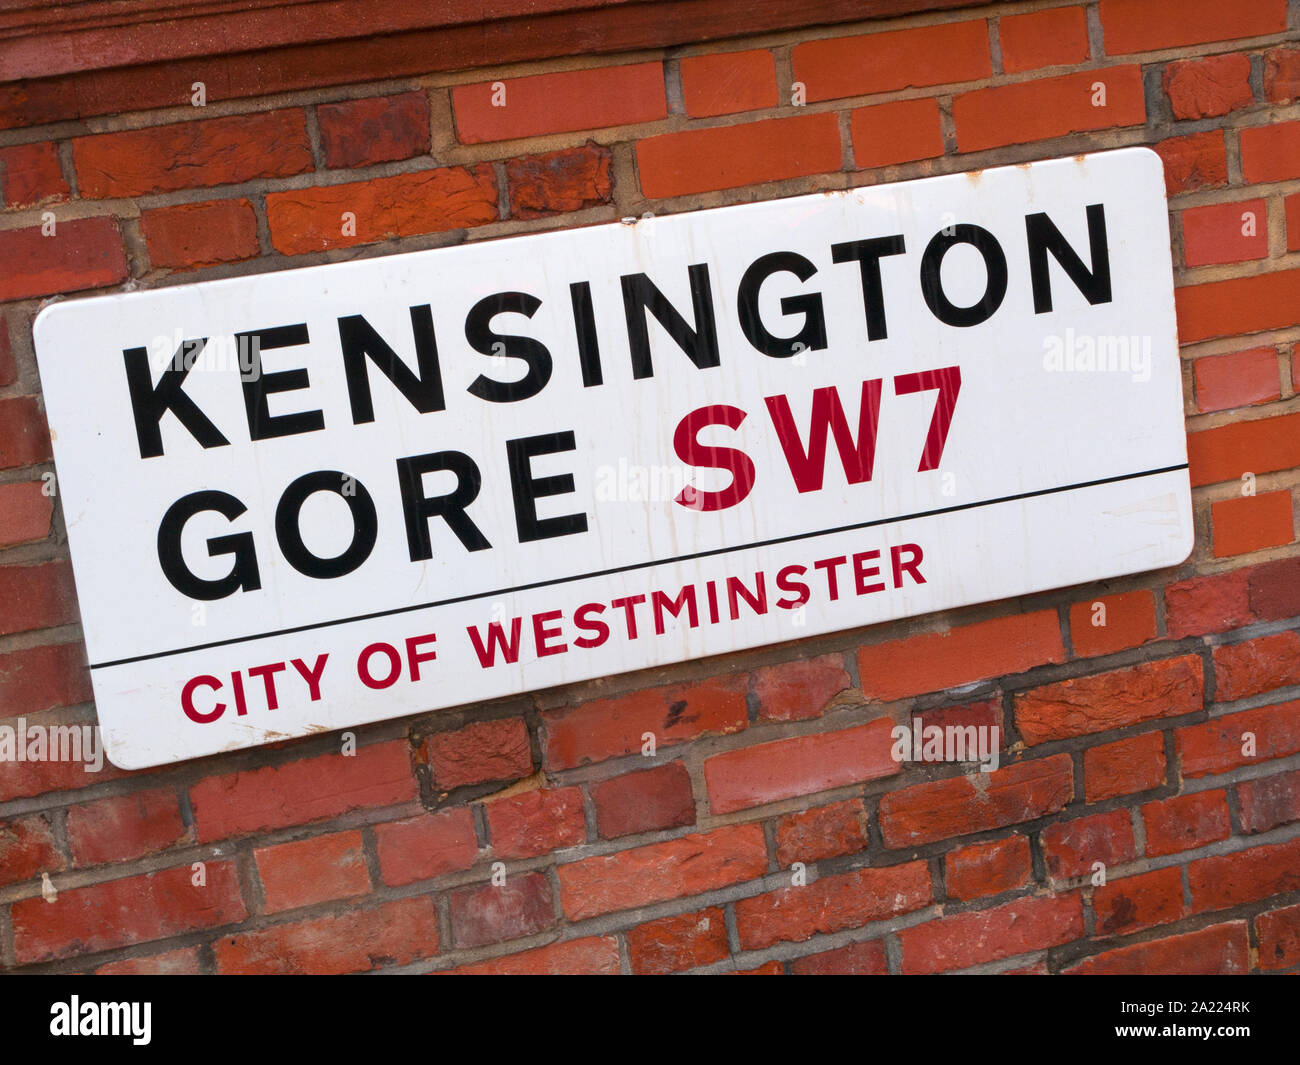 Kensington Gore, SW7, street sign Stock Photo